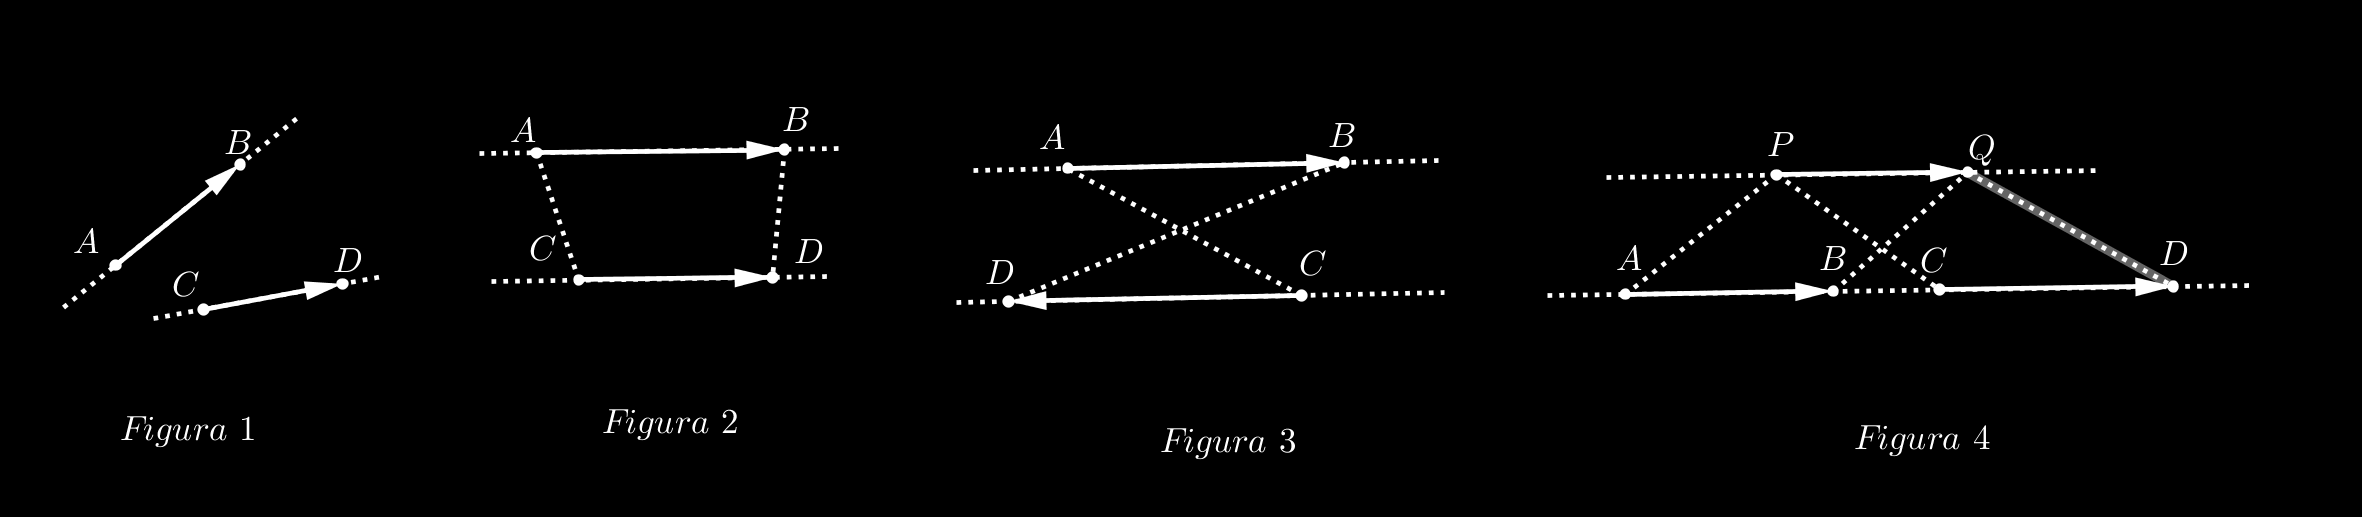 si las rectas sostén son coincidentes, si existe un vector P Q cuya recta sostén no es AB, y P Q tiene igual sentido que AB y CD.